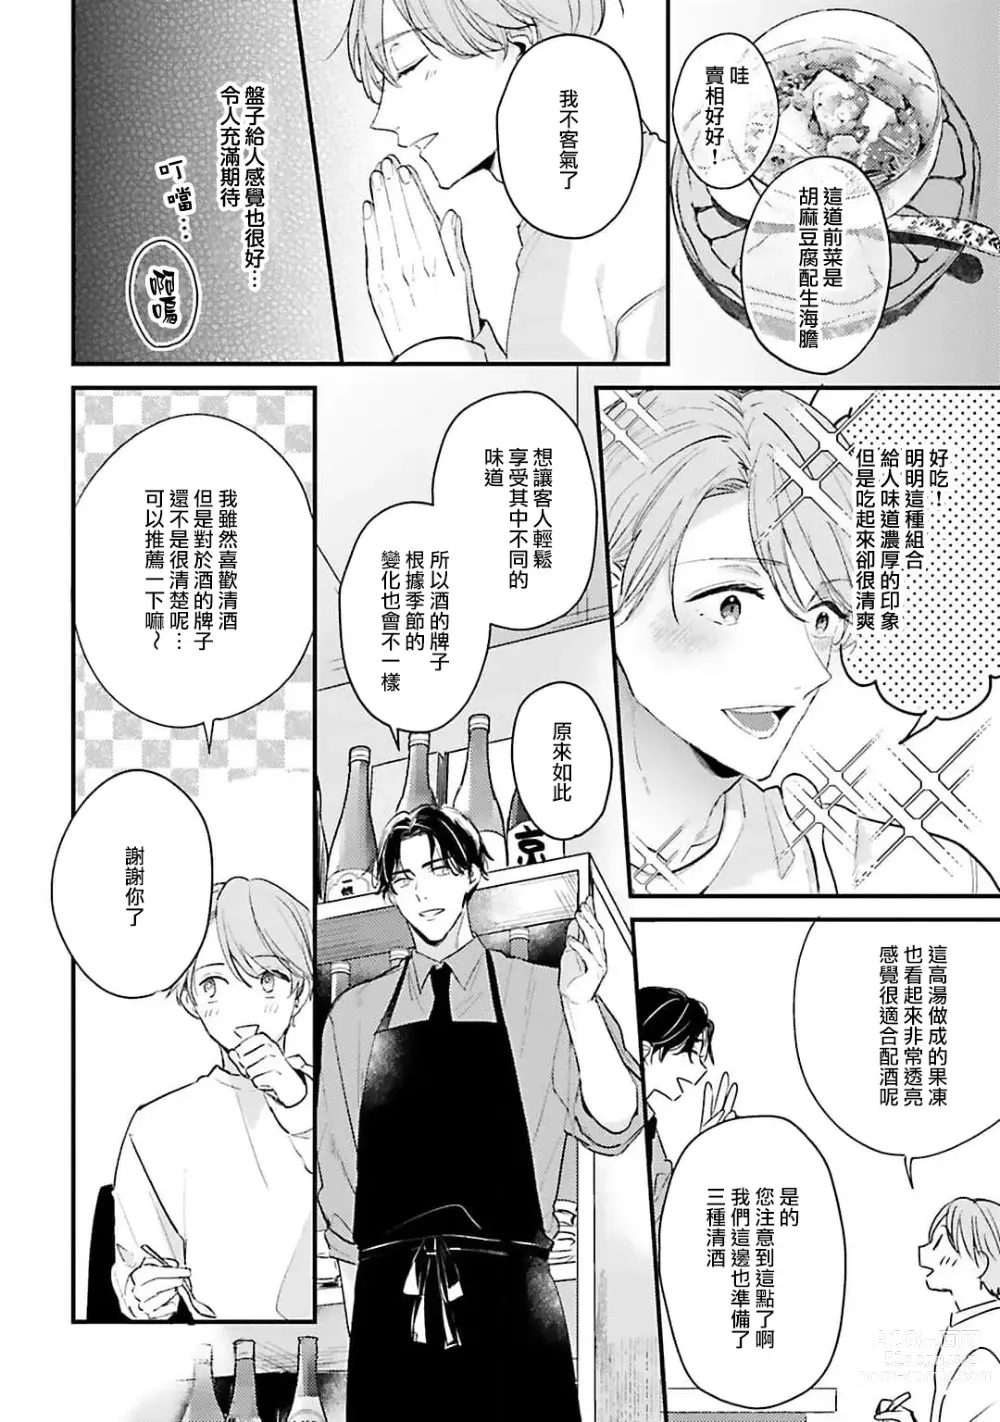 Page 9 of manga 绽放的恋爱皆为醉与甜1-5